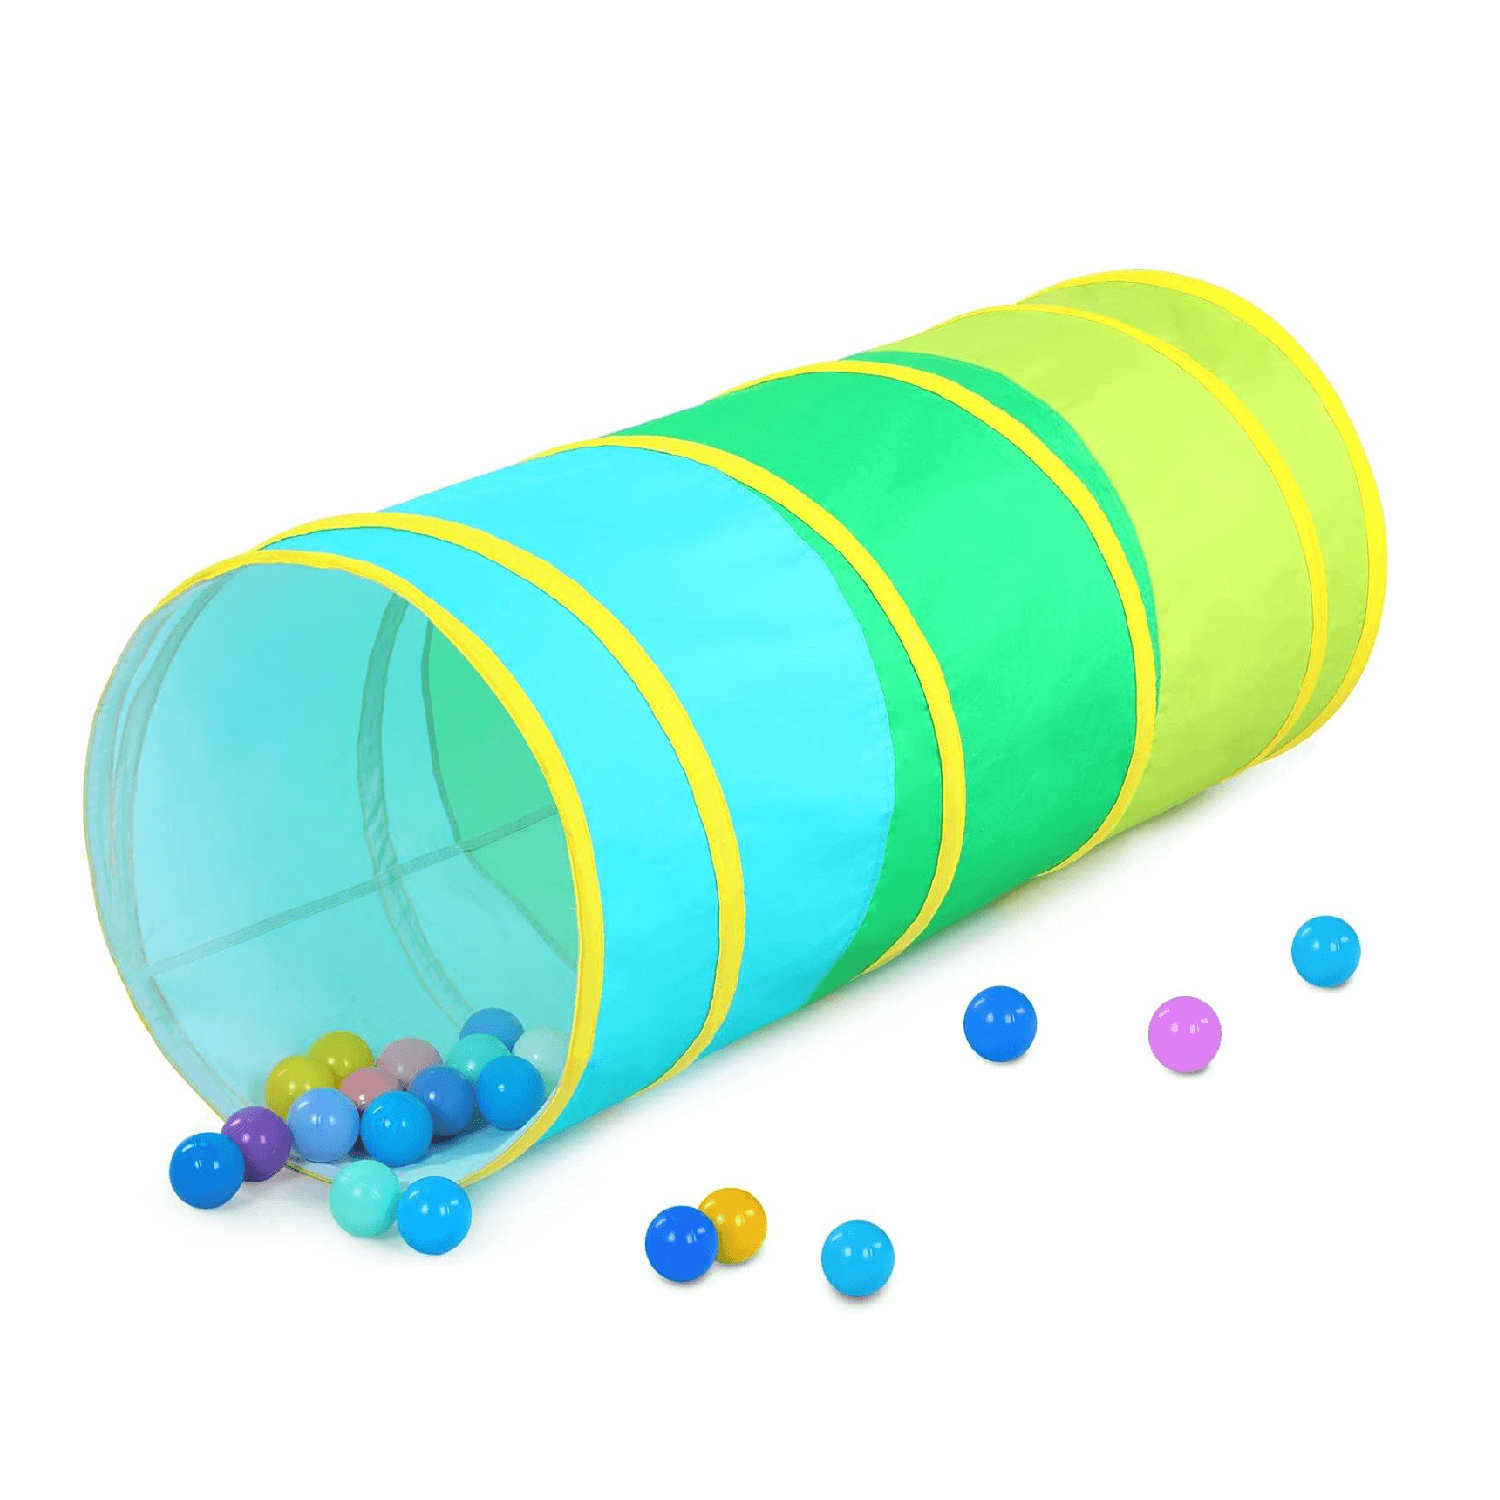 Montessori Moncoland Single Play Tunnel Colorful Cotton